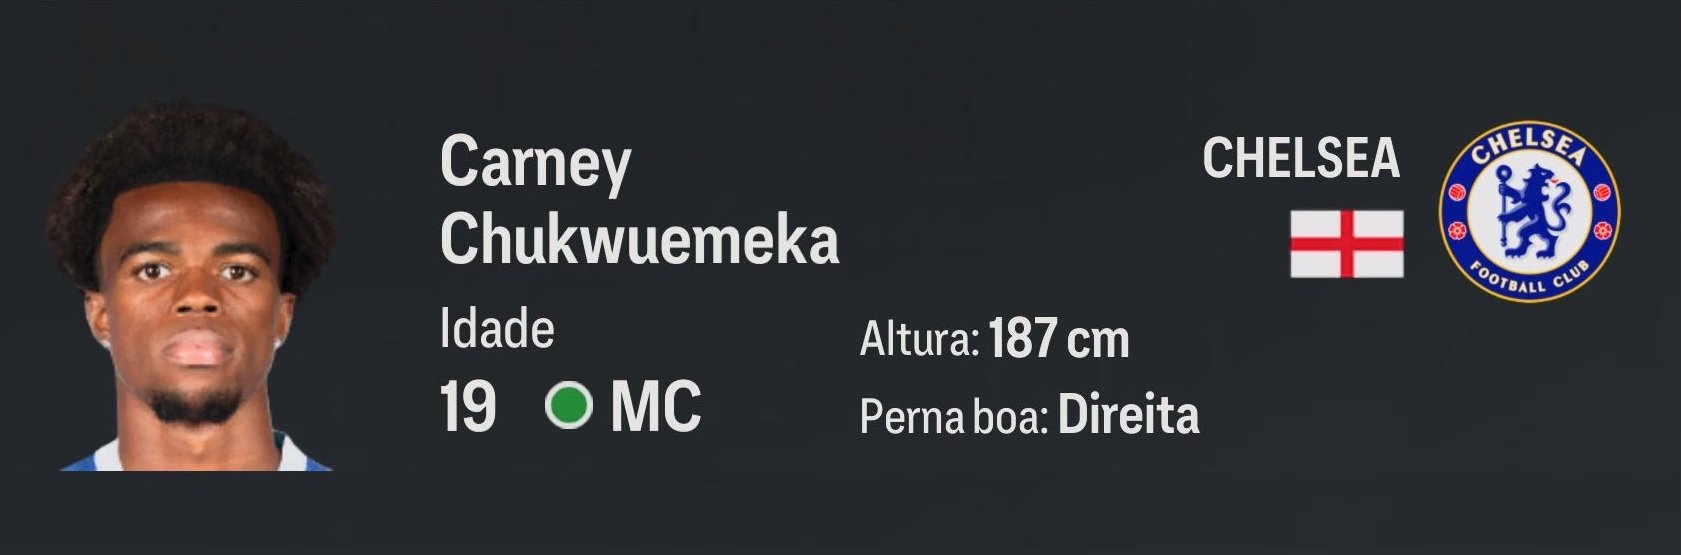 Carney Chukwuemeka